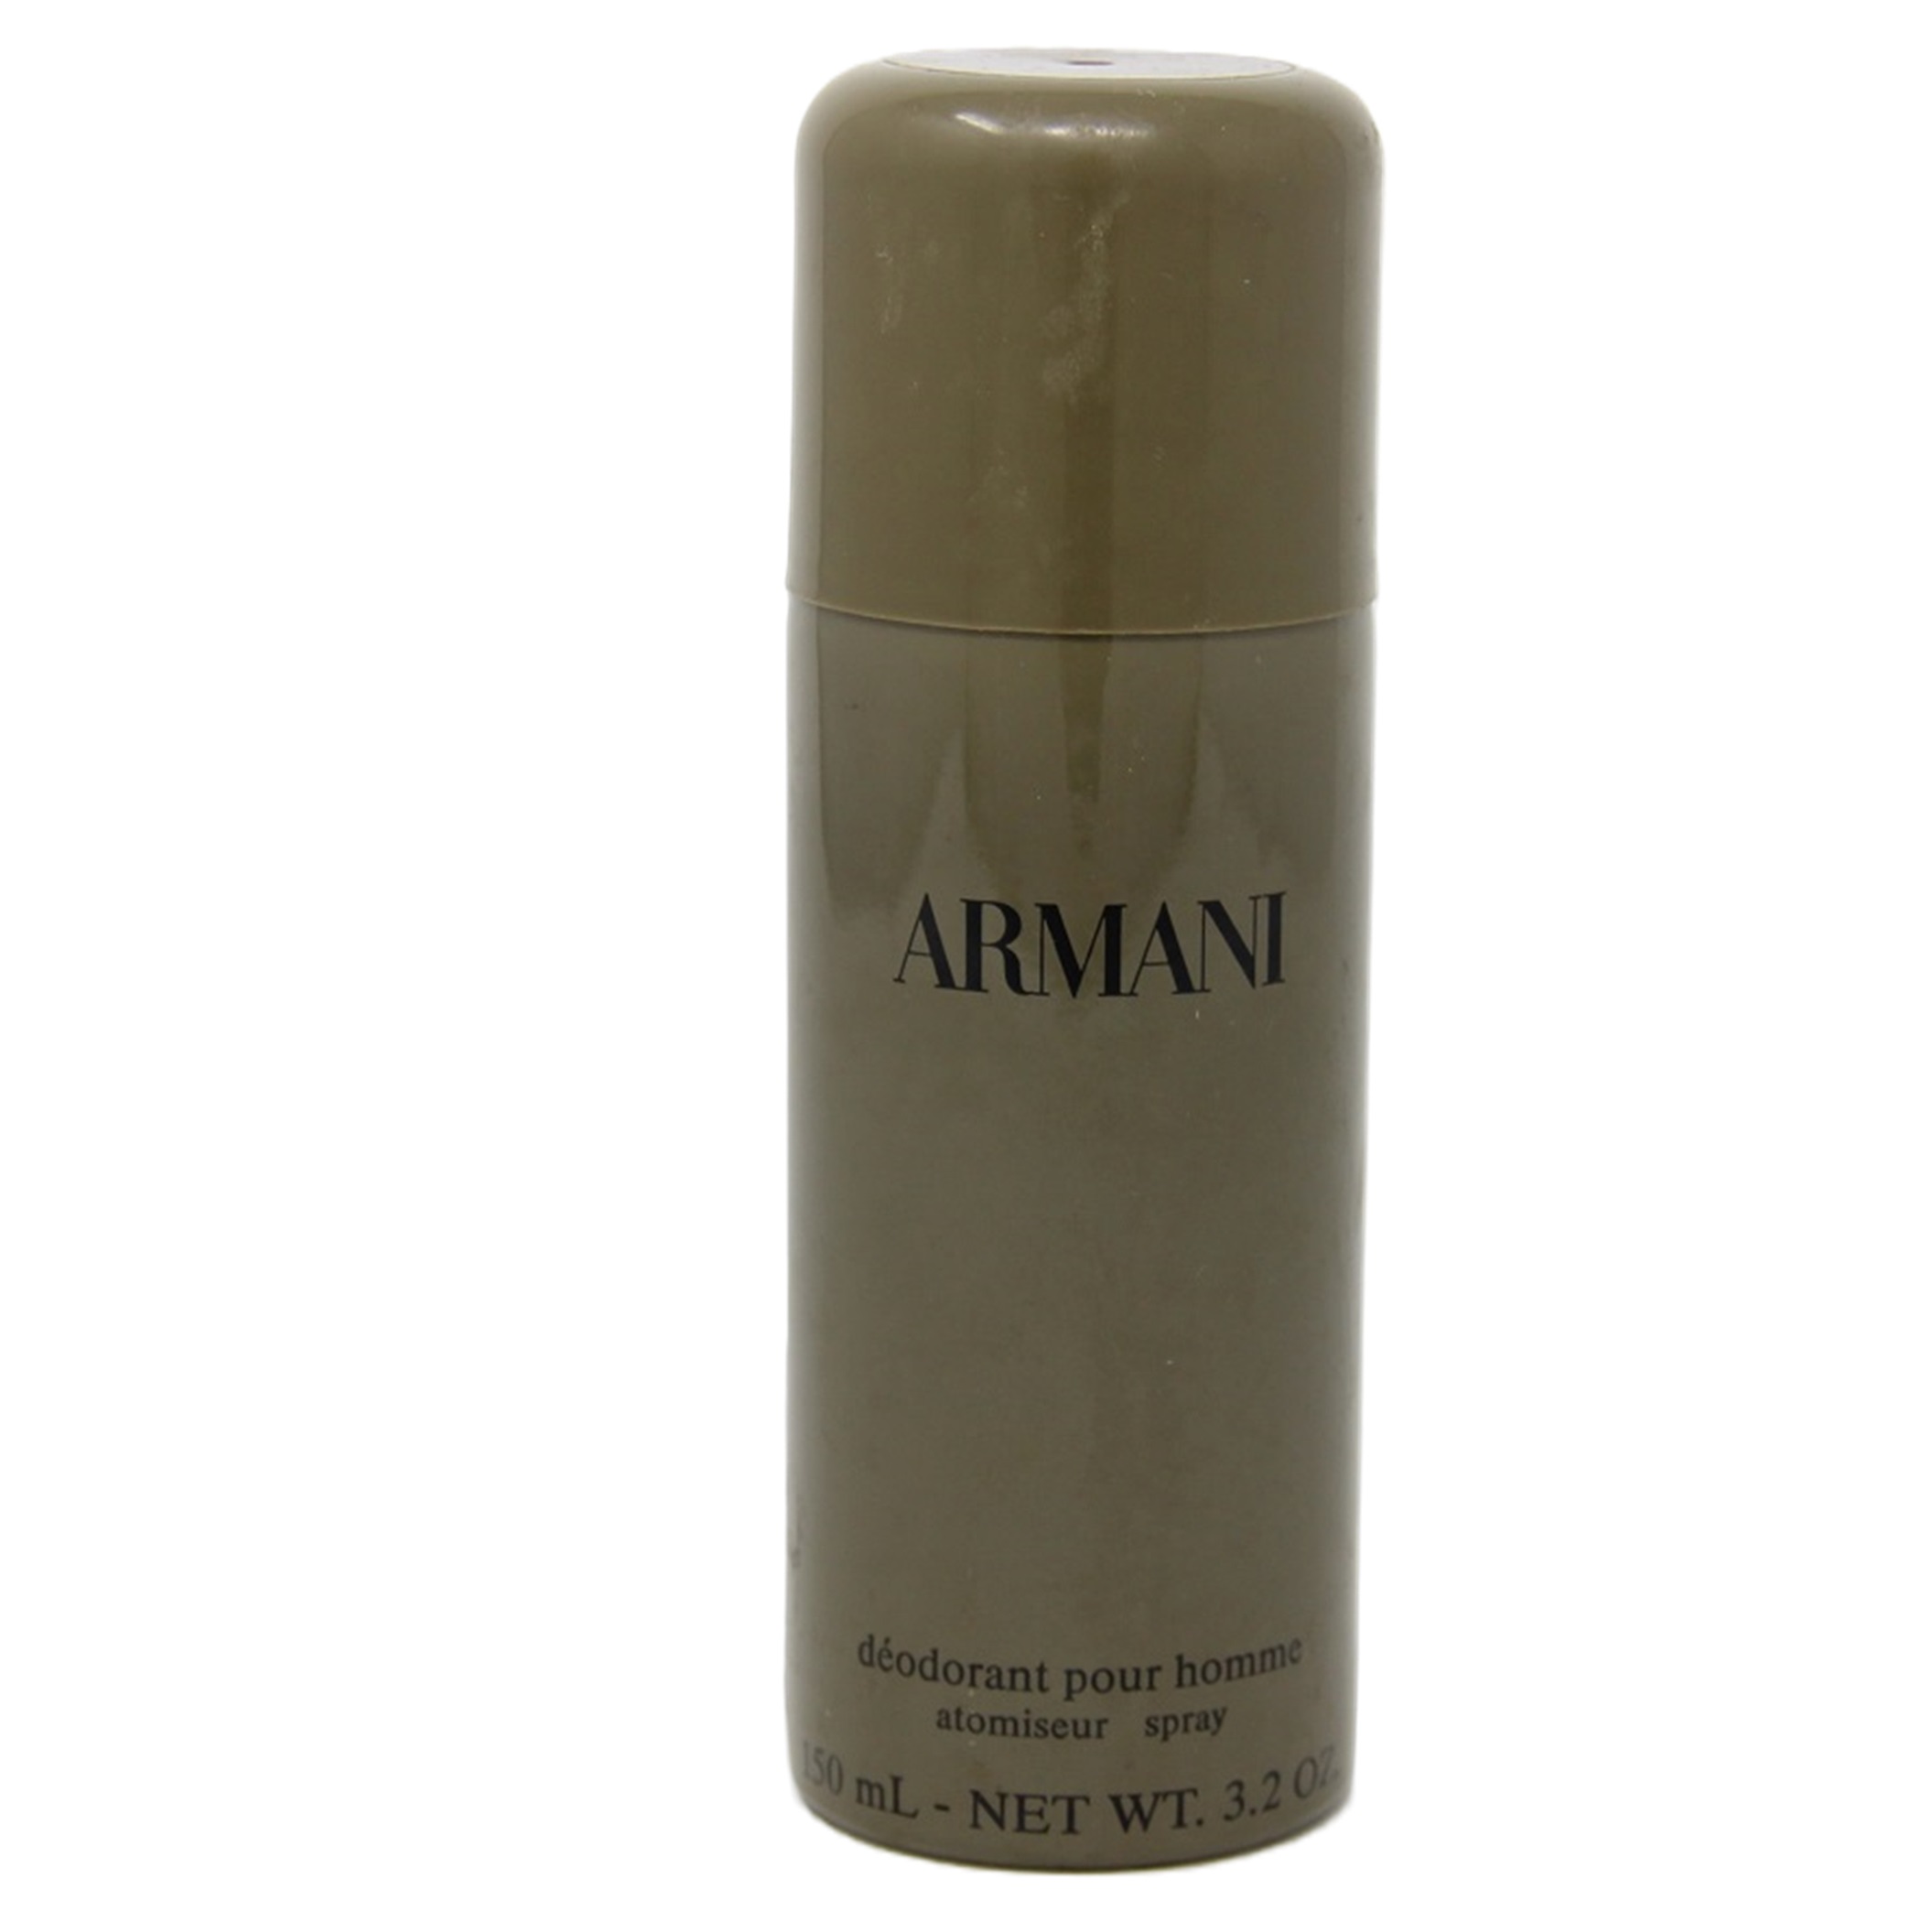 Armani Deodorant Pour Homme Spray Atomiseur 150ml